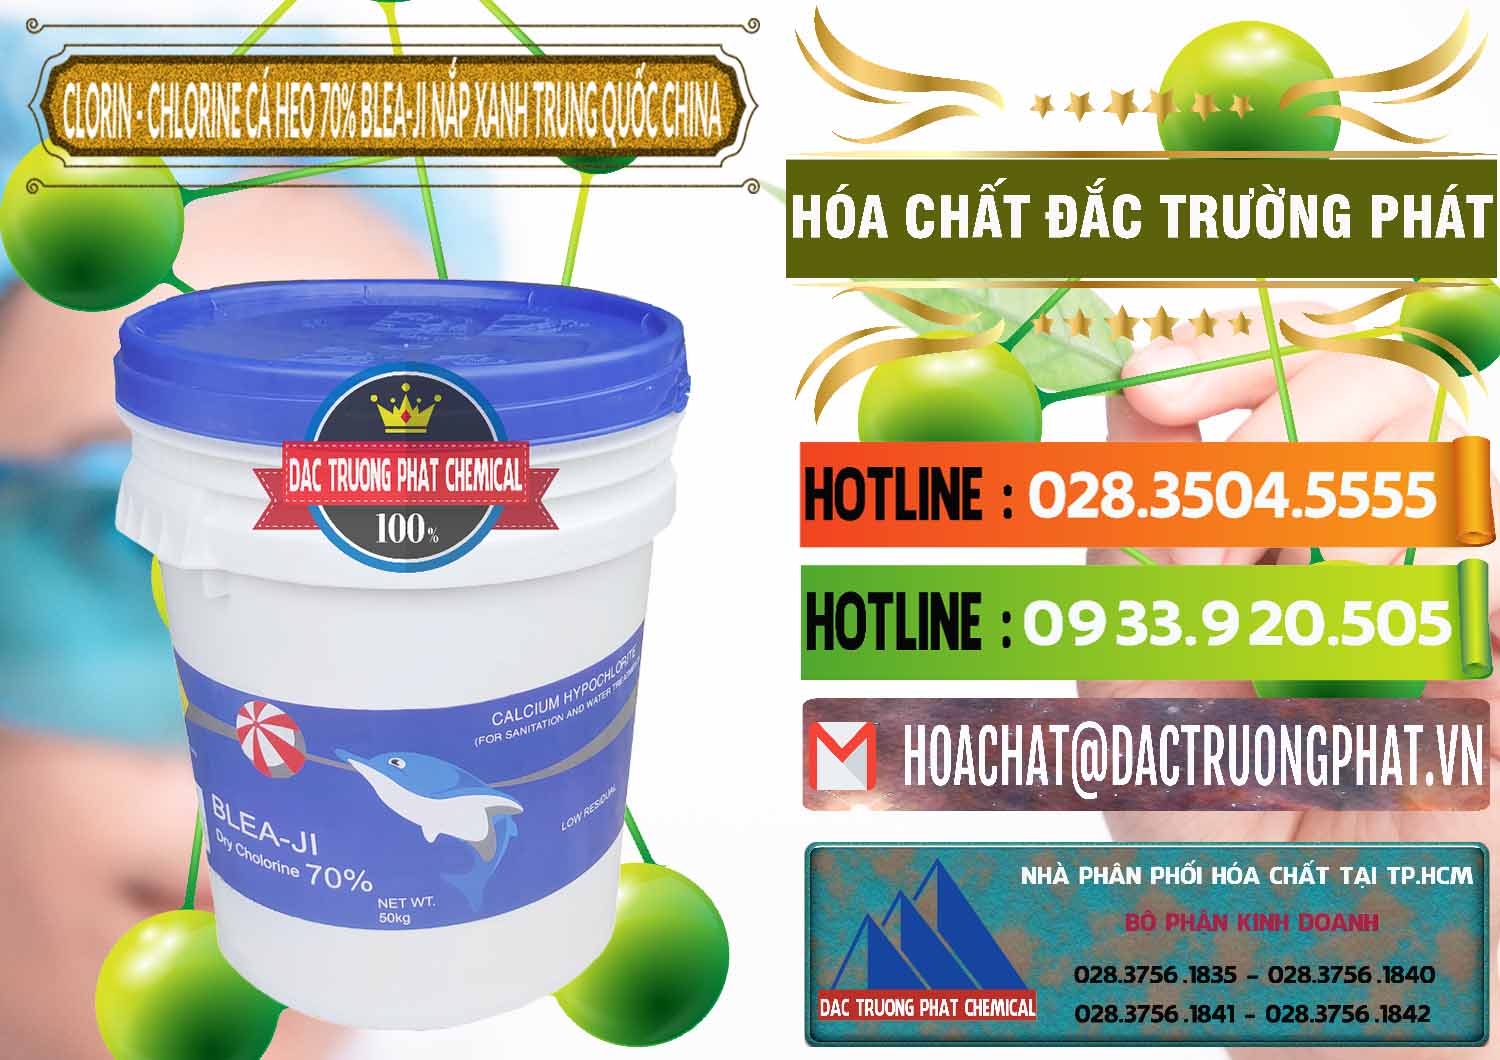 Công ty bán & cung cấp Clorin - Chlorine Cá Heo 70% Cá Heo Blea-Ji Thùng Tròn Nắp Xanh Trung Quốc China - 0208 - Công ty cung cấp và kinh doanh hóa chất tại TP.HCM - cungcaphoachat.com.vn